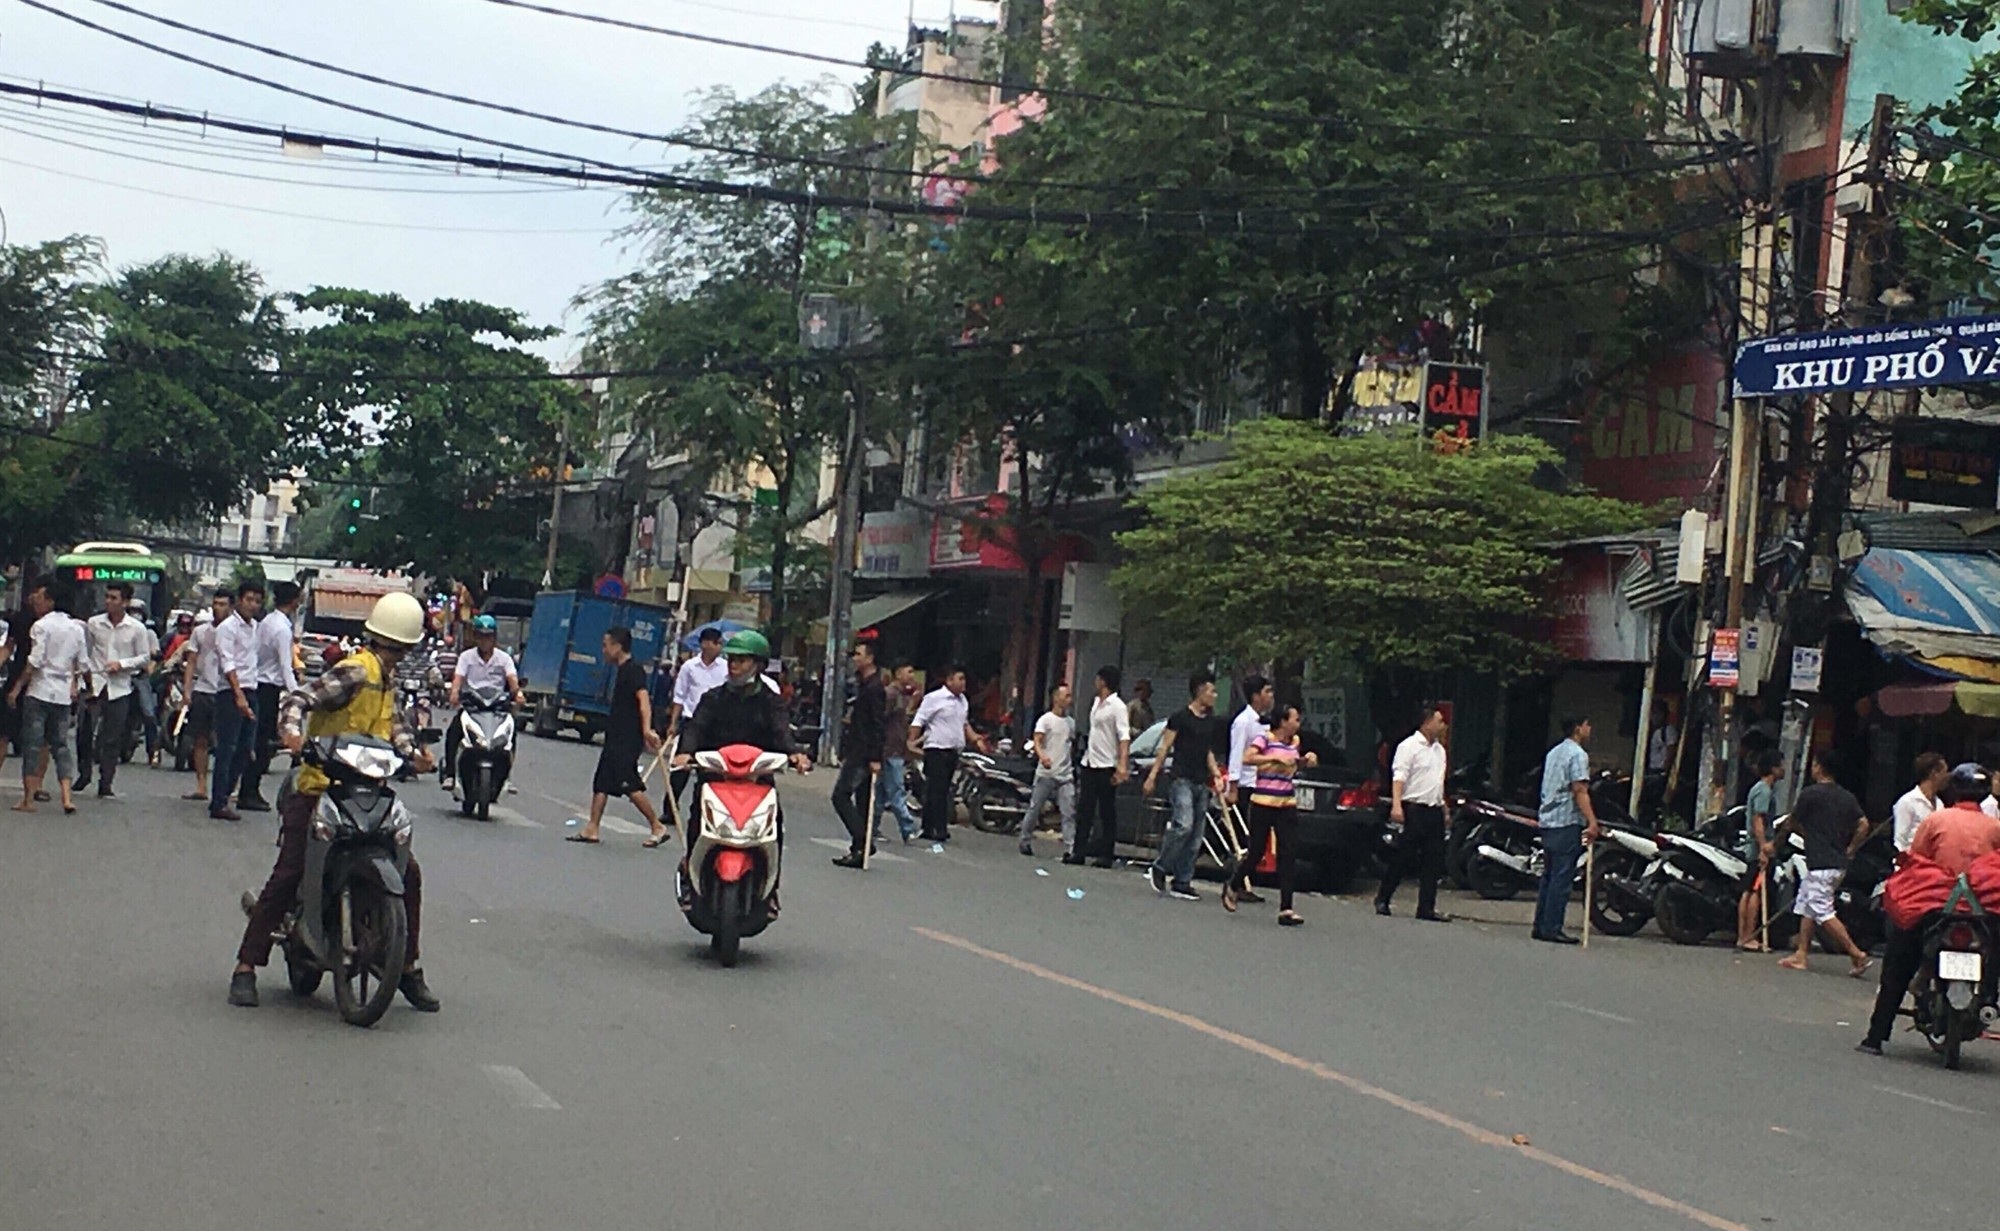 Hơn 50 thanh niên hỗn chiến, náo loạn đường phố Sài Gòn - Ảnh 1.